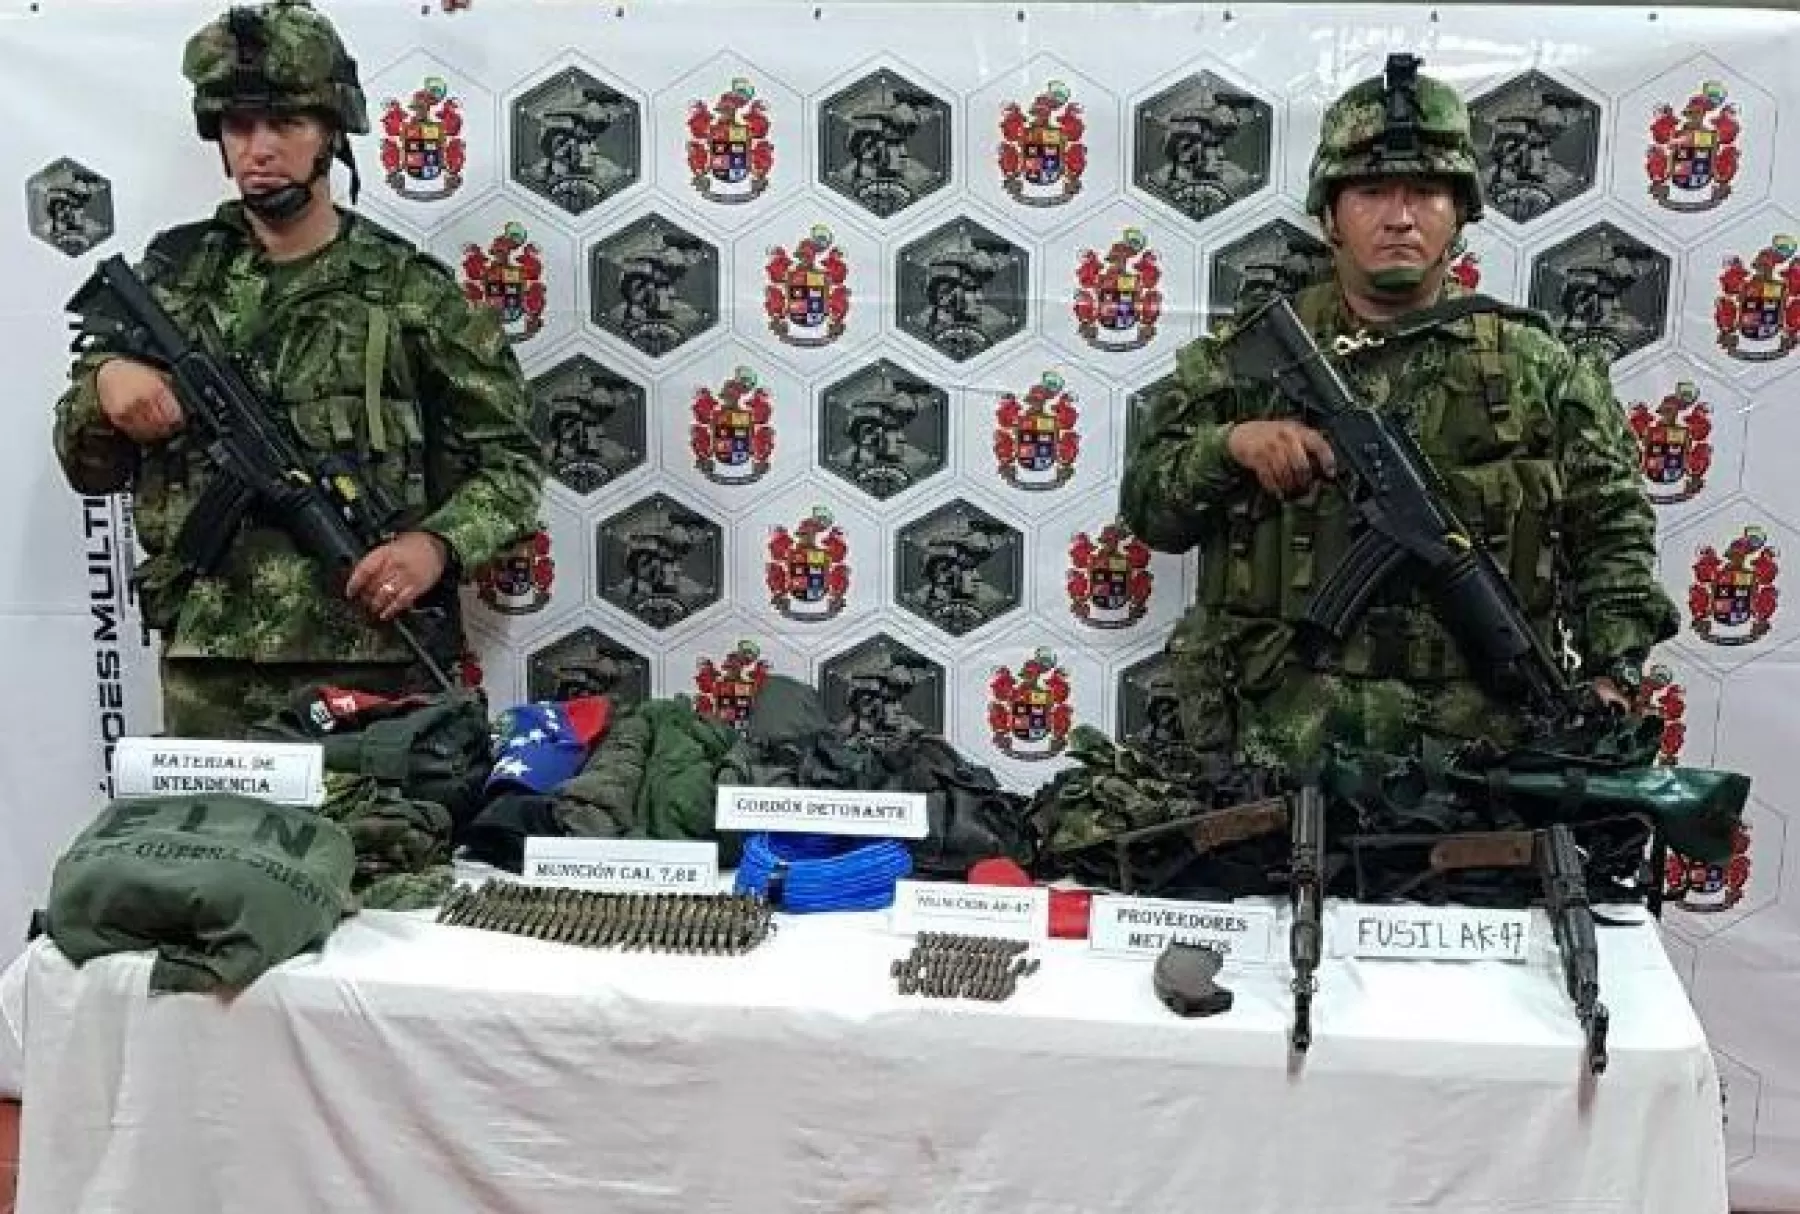 Ejército encontró armamento en zona rural del municipio de Hato Corozal, departamento de Casanare.